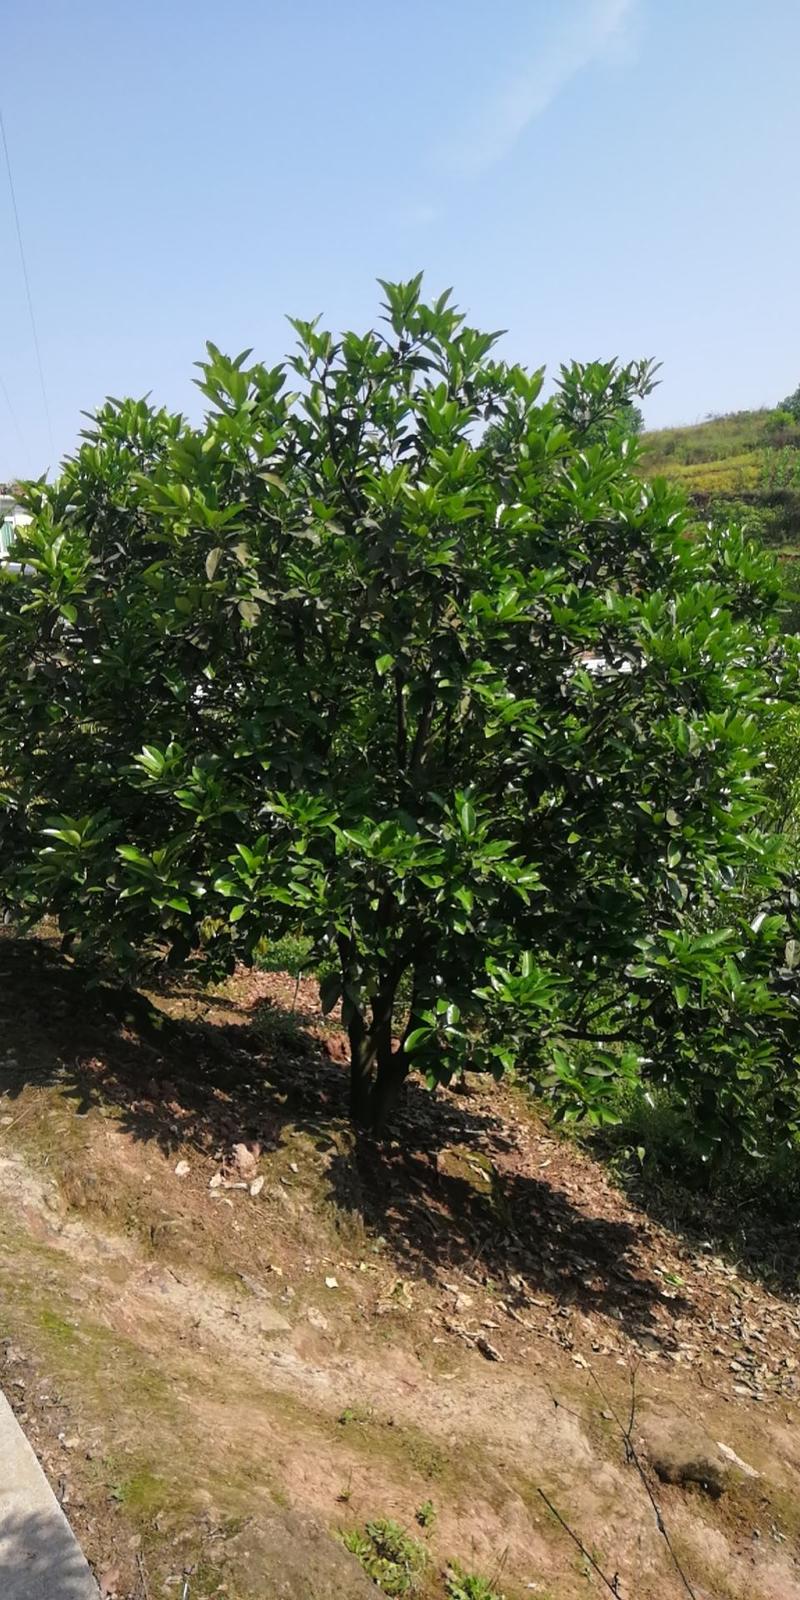 3.5米—6米香泡杨梅树有现货树形任意挑选